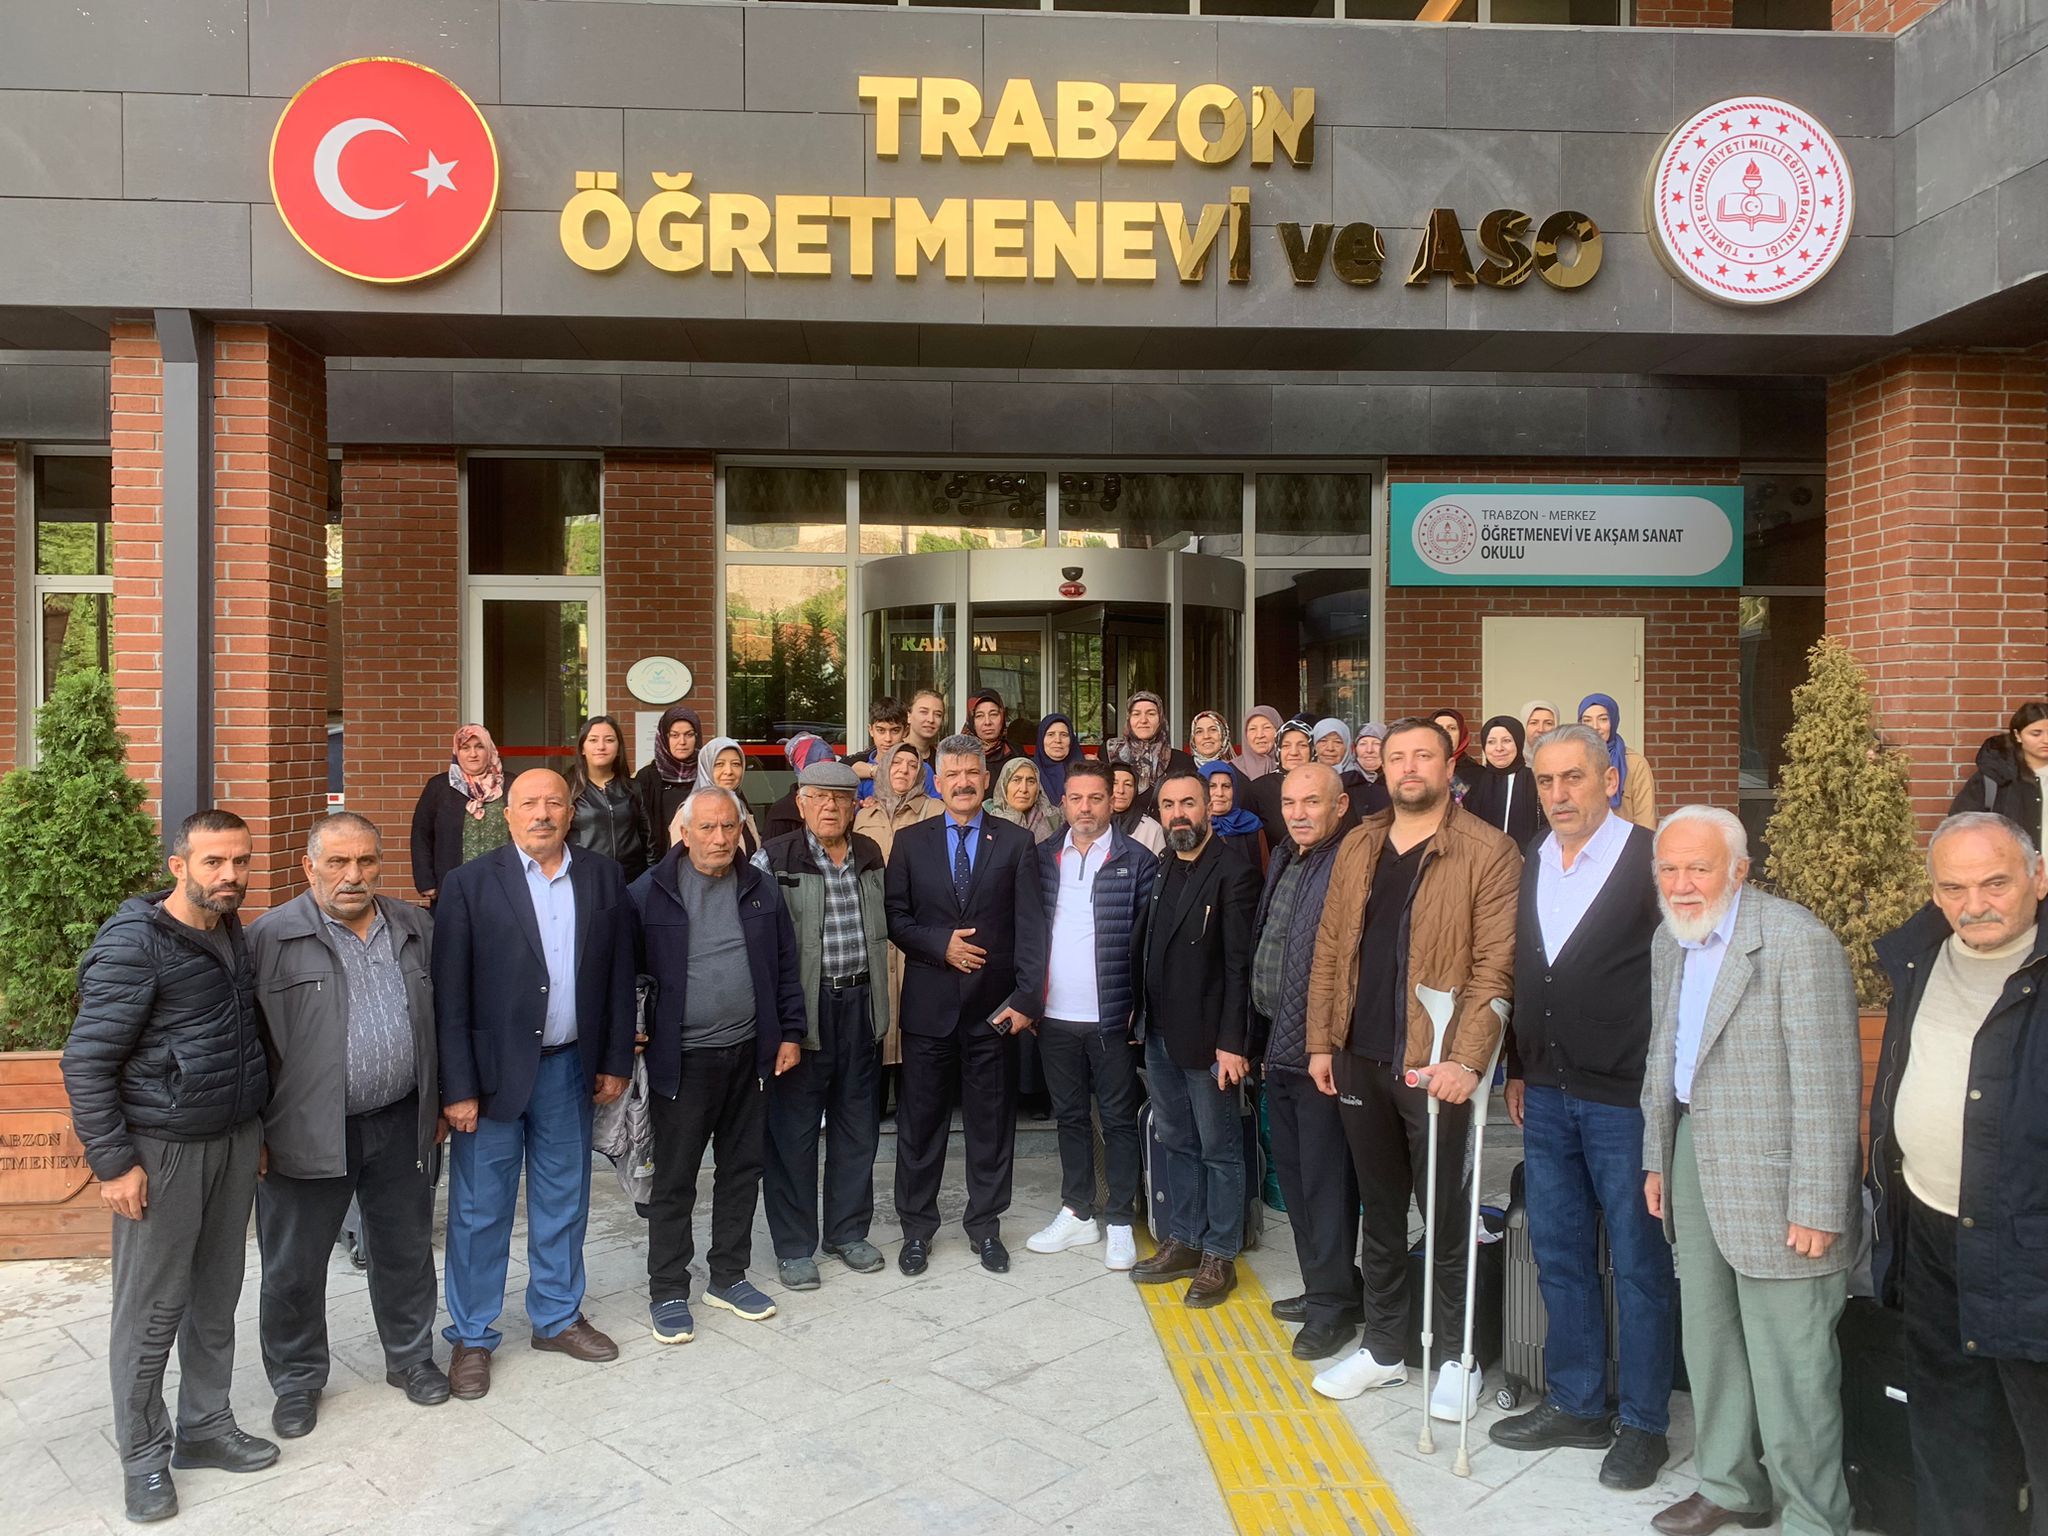 Trabzon'da kaldığımız üç günün her anıyla özel olarak ilgilenen ve bugün bizi uğurlamaya gelen Trabzon Emniyet Müdürü Sayın Murat ESERTÜRK'e, şehit anne ve babaları adına teşekkür eder, şükranlarımızı sunarız. Trabzon Valilik Trabzon Emniyet.